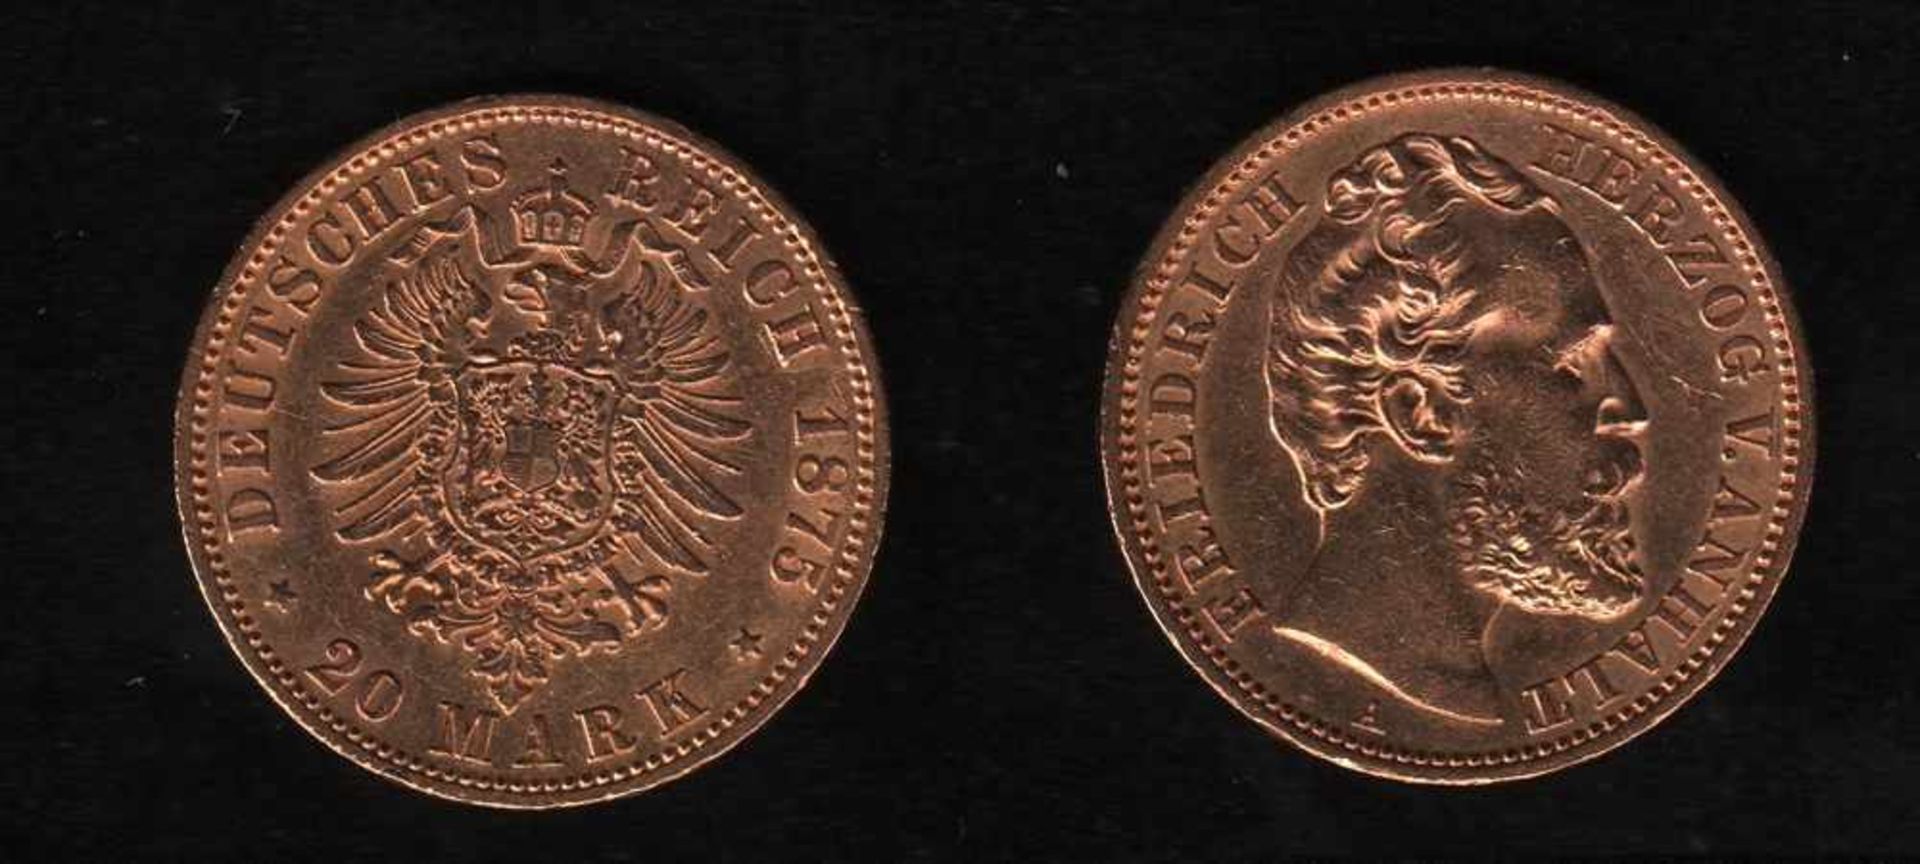 Deutsches Reich. Goldmünze.20 Mark. Friedrich I., Herzog von Anhalt. A 1875. Vorderseite: Porträt